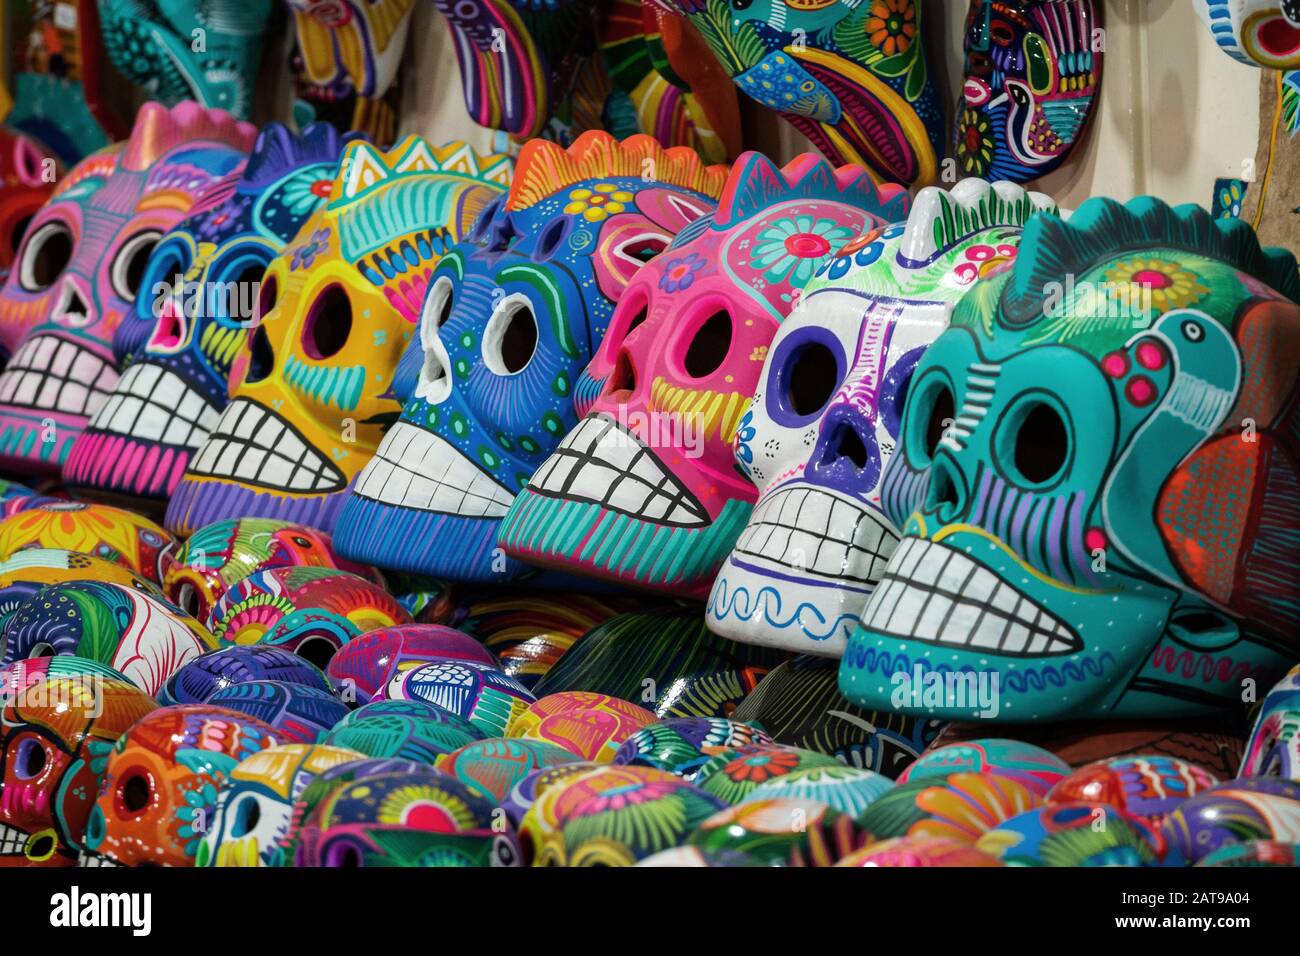 Skulles colorées décorées sur le marché de la rue à San Miguel de Allende, Mexique, concept de jour des morts (Dia de los Muertos). Banque D'Images